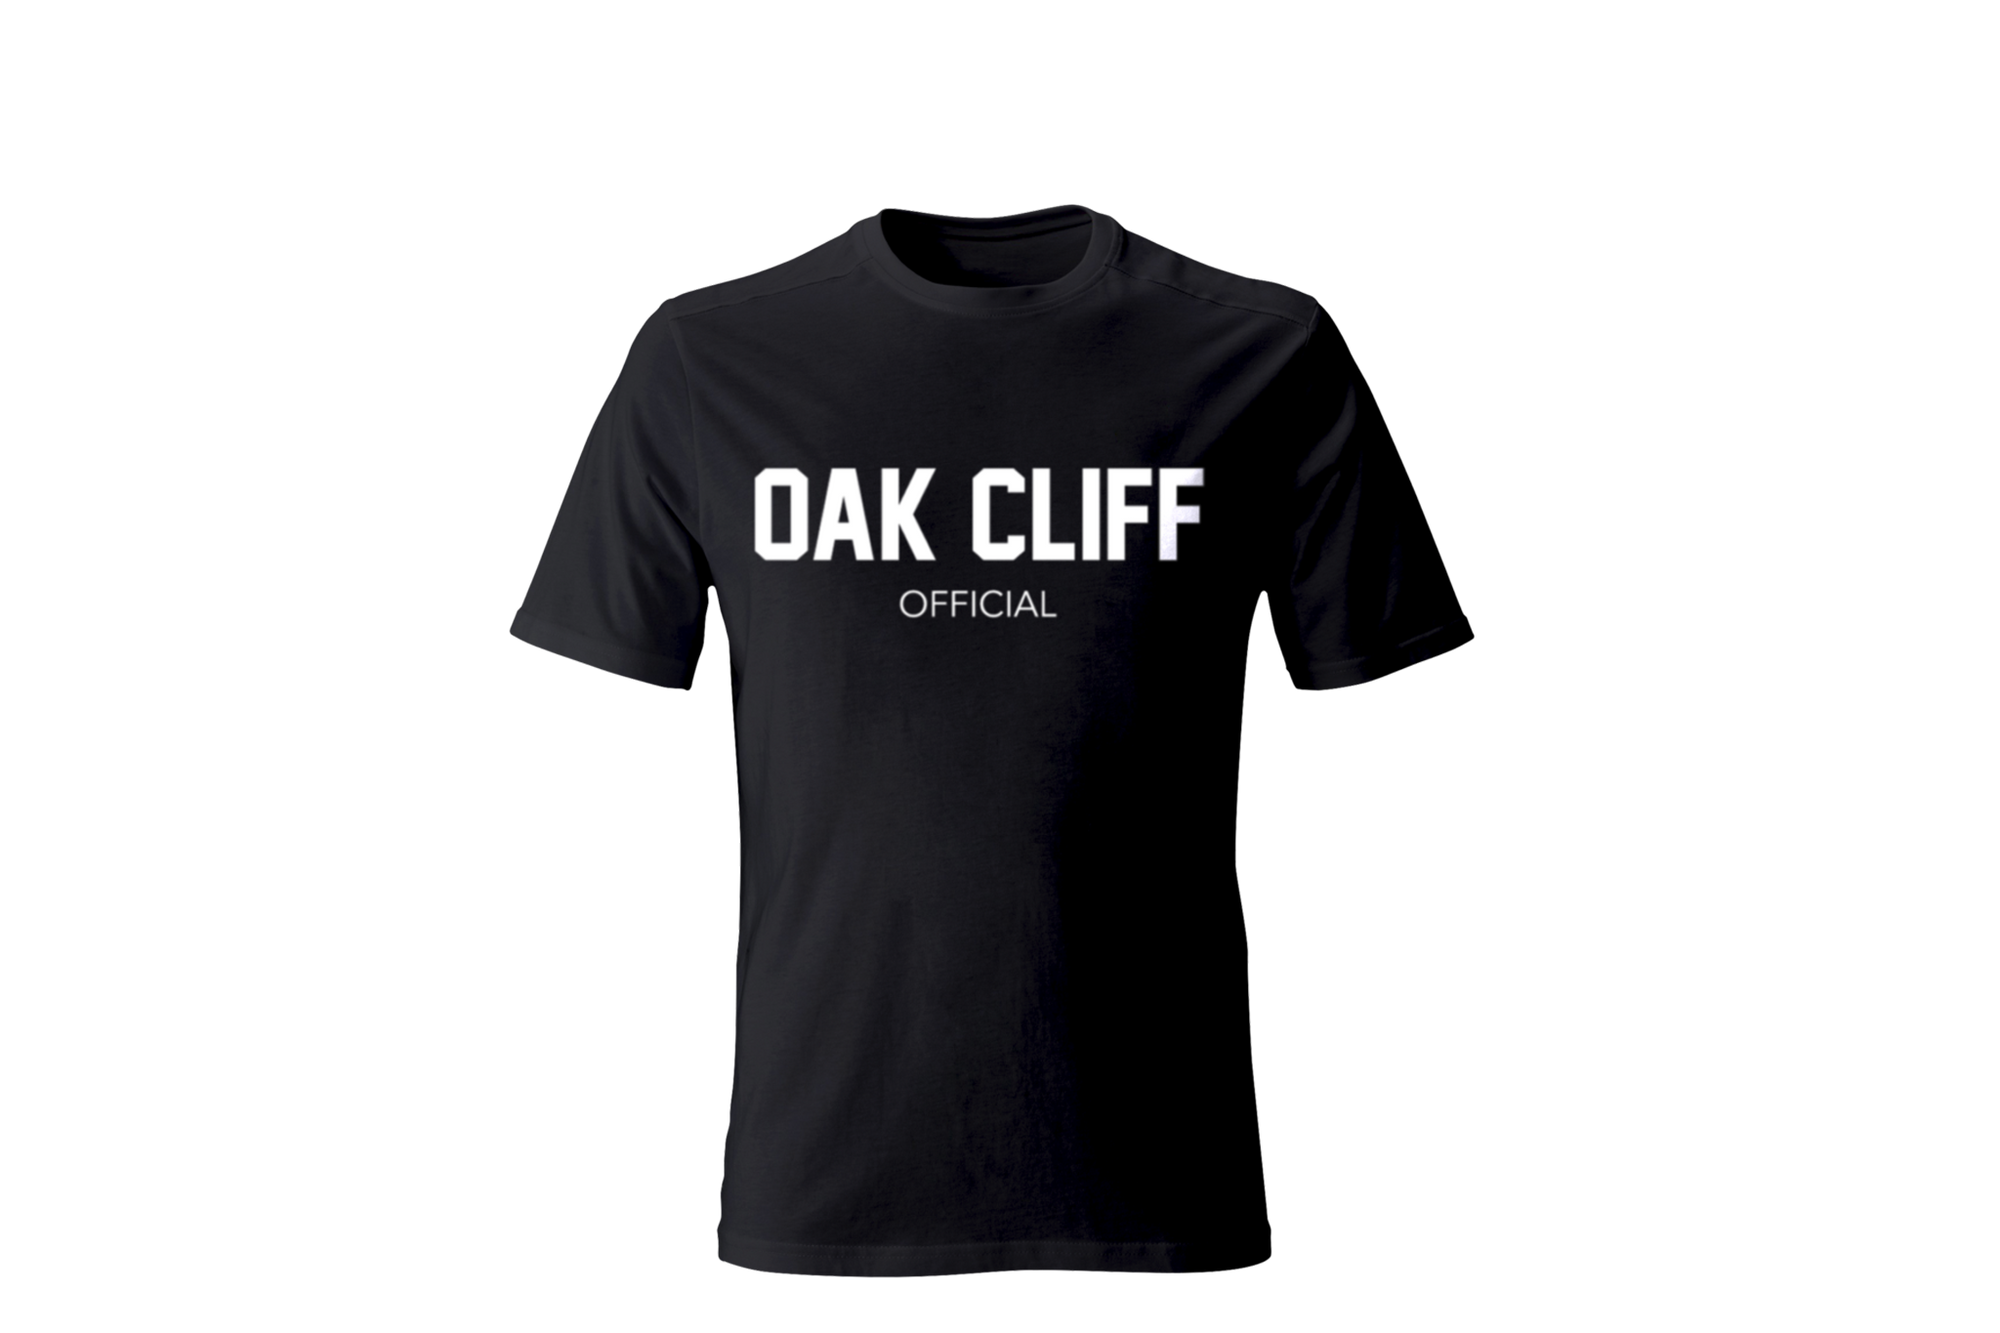 Oak Cliff Official Tee